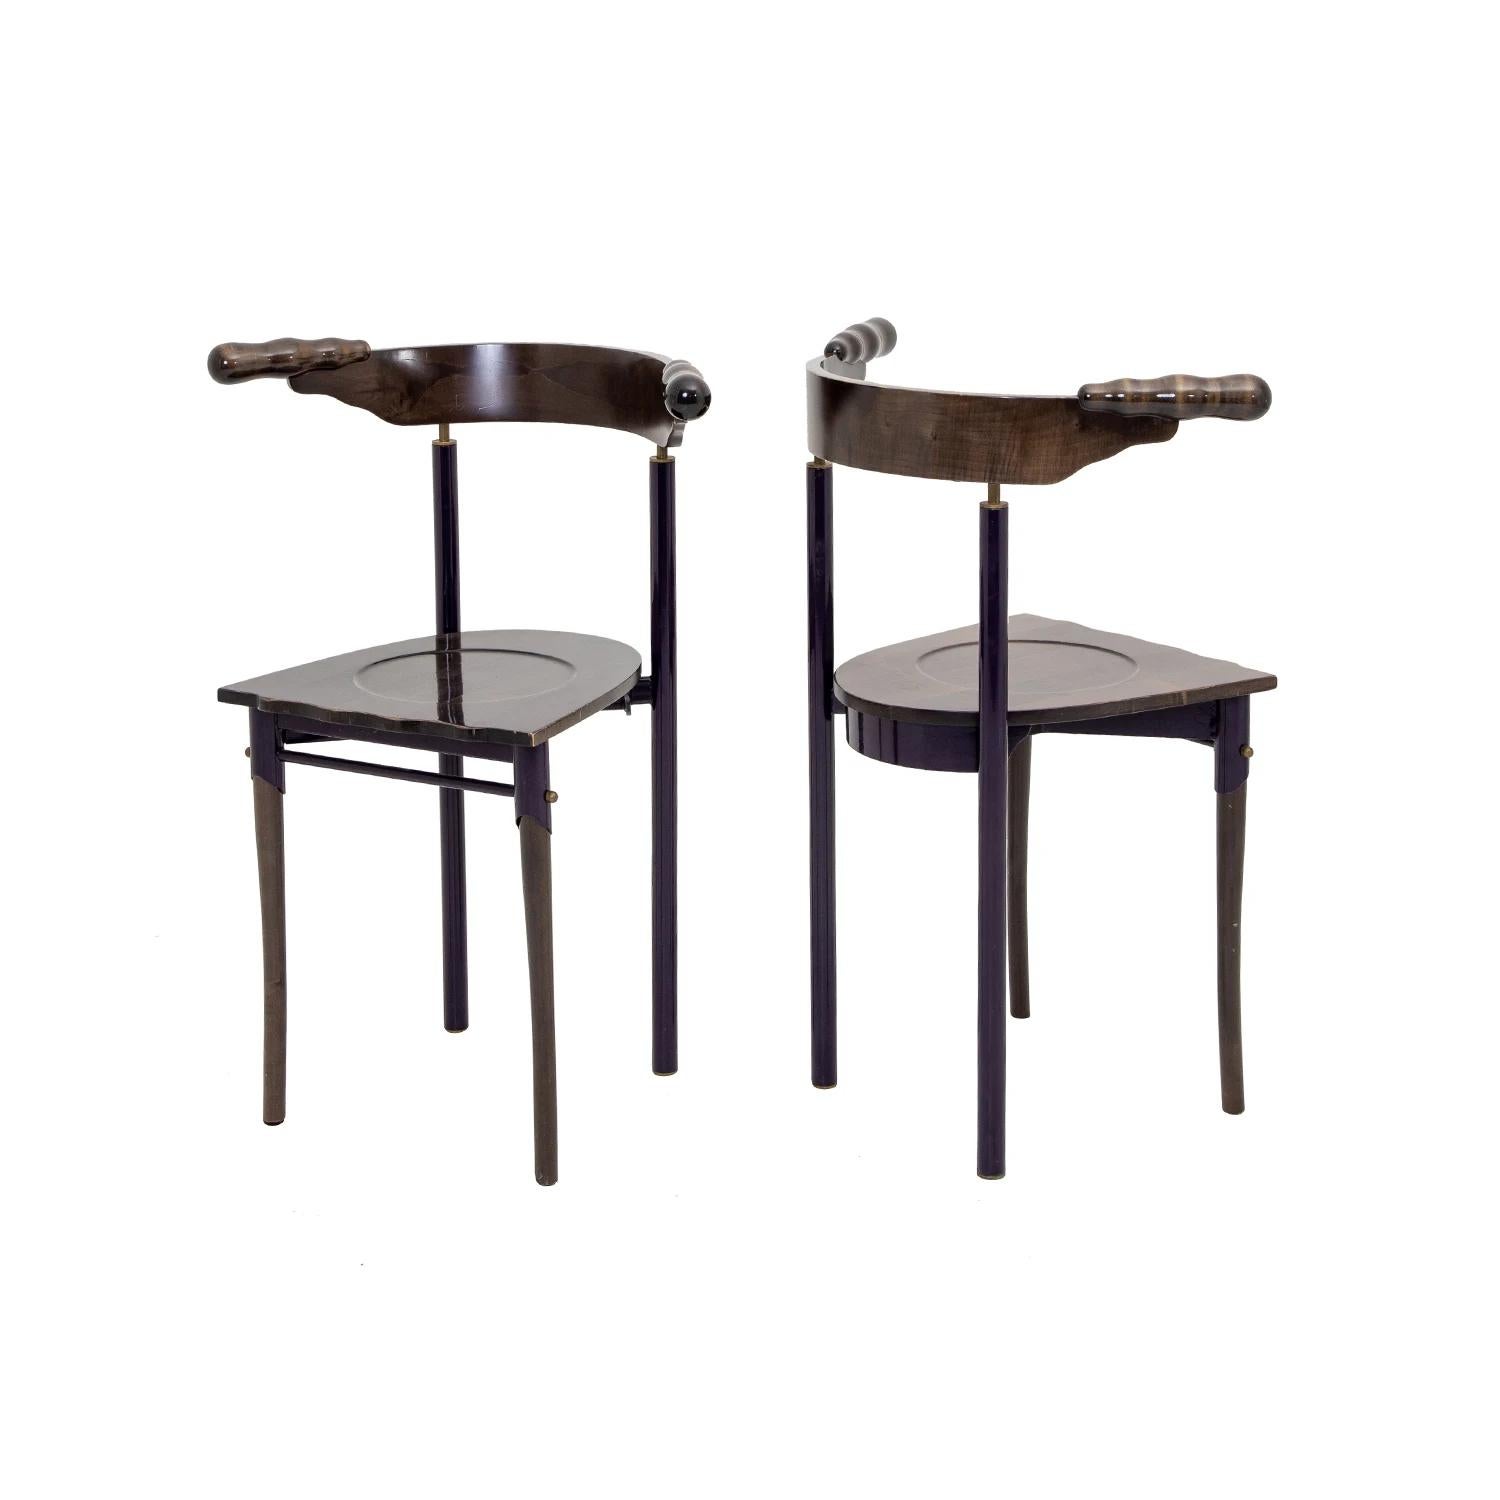 Ein dunkelbraunes, italienisches Paar Jansky Beistellstühle aus handgefertigtem Nussbaum, entworfen von Borek Sipek und hergestellt von Driade, in gutem Zustand. Die Skulpturenstühle haben eine rund gewölbte Rückenlehne und stehen auf vier geraden